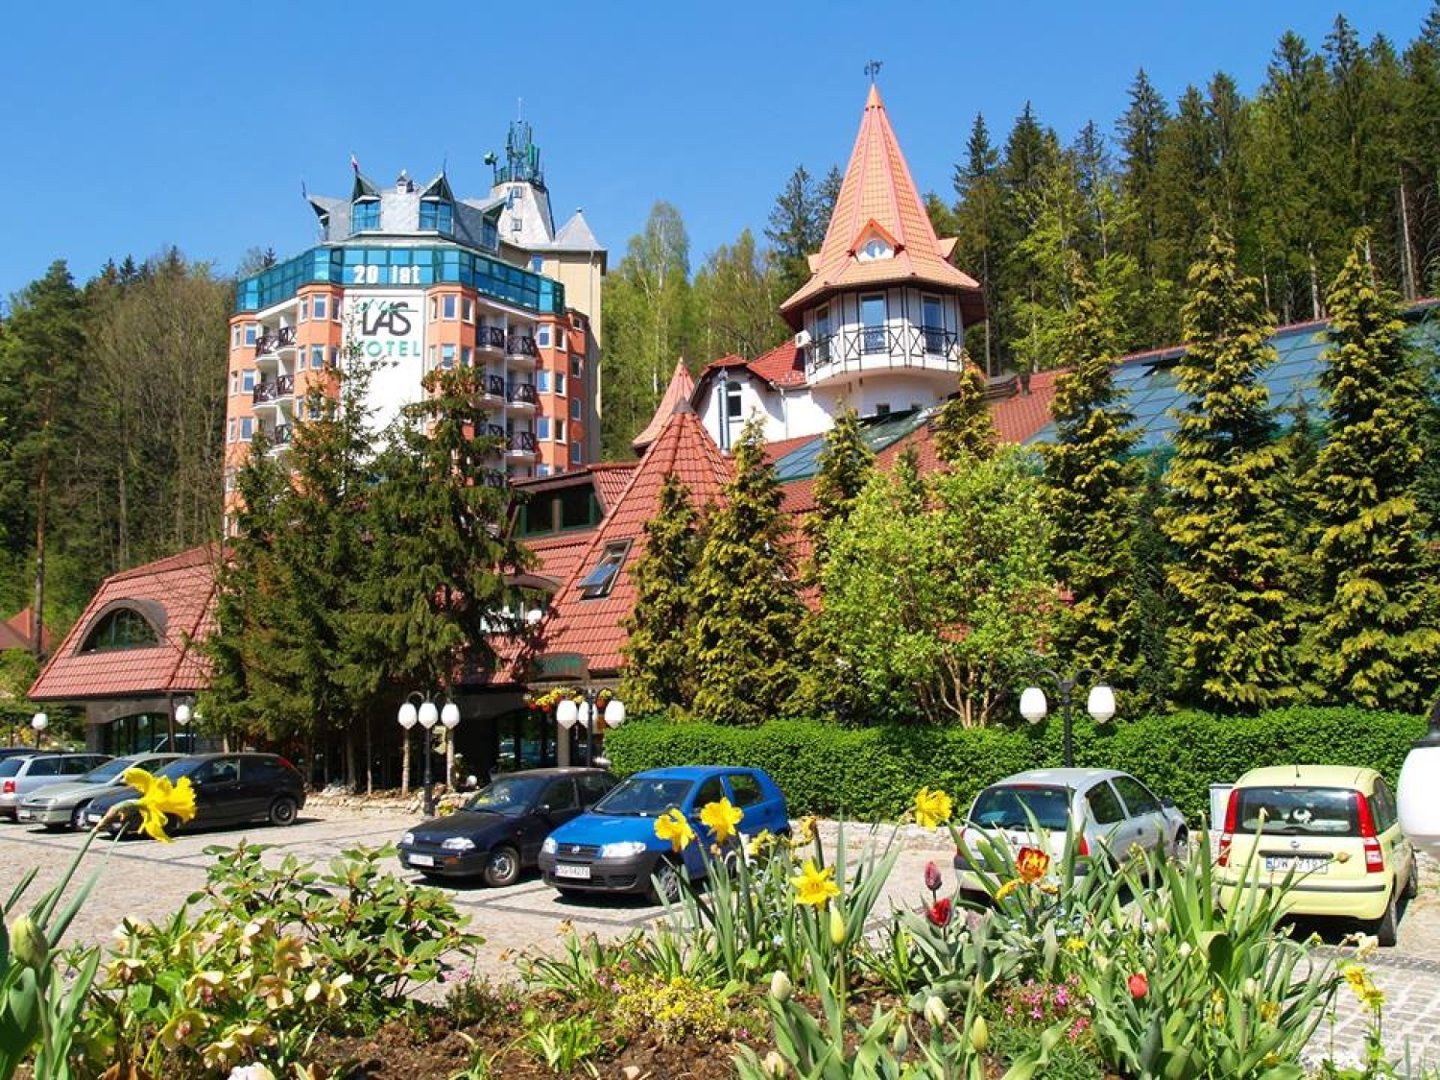 Hotel Las w Piechowicach. Sąd ogłosił upadłość właściciela | Szklarska  Poręba Nasze Miasto